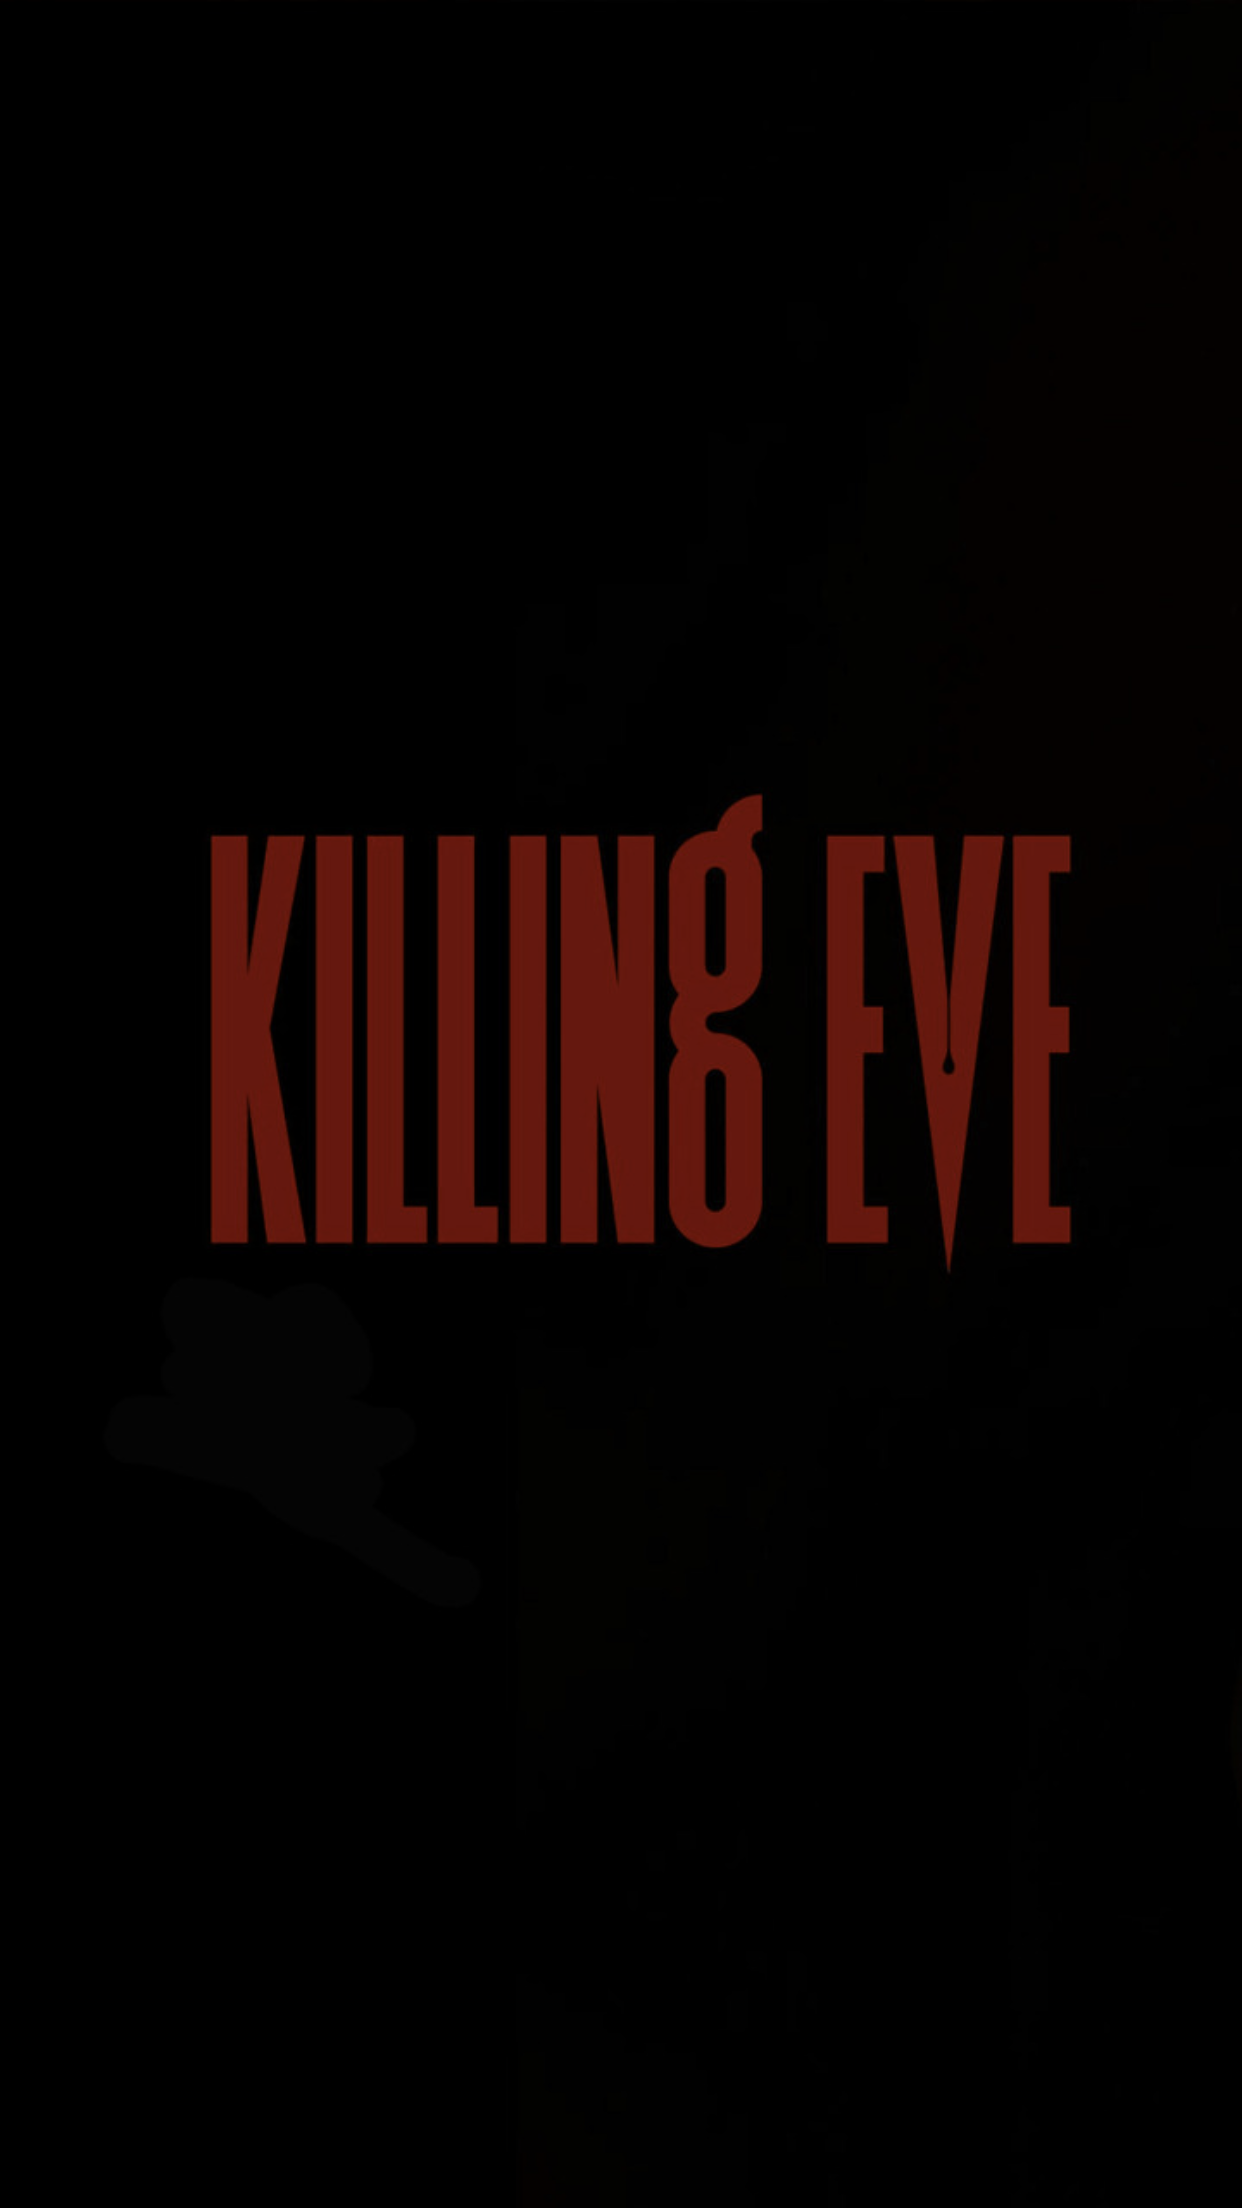 Killing Eve Wallpaper Free Killing Eve Background